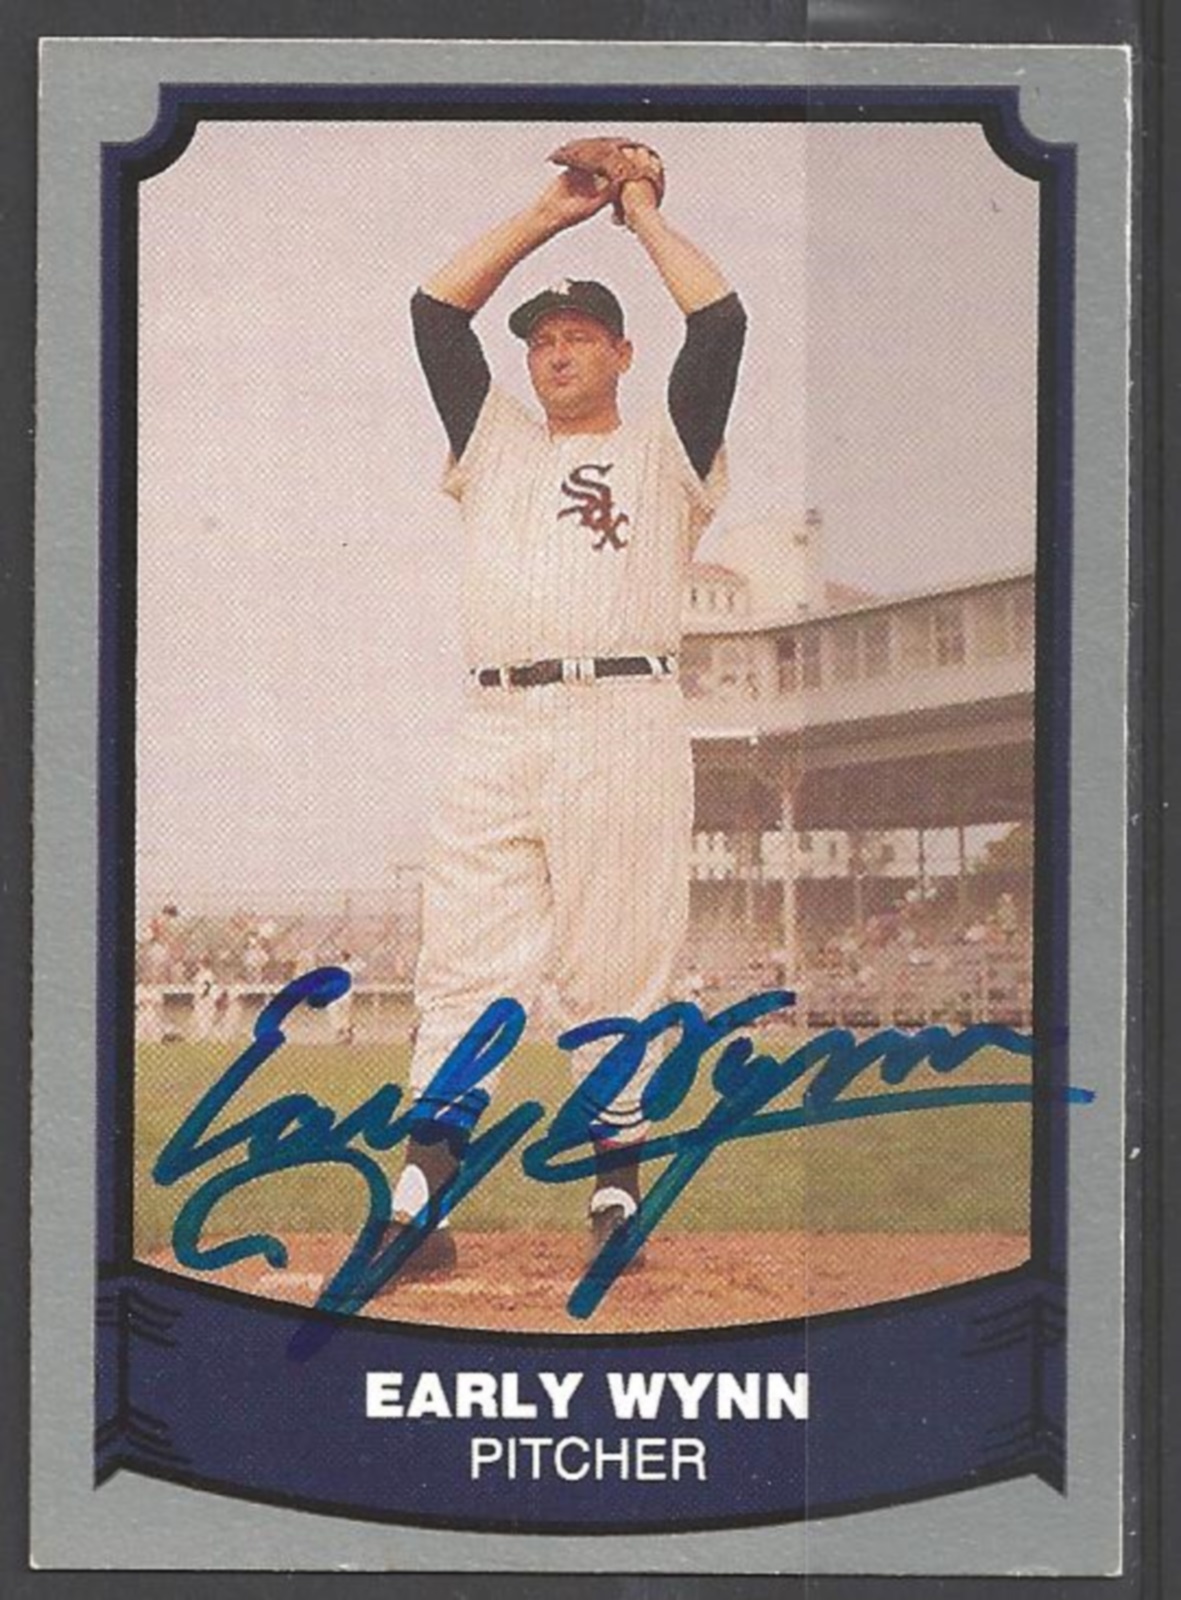 Early Wynn baseball card